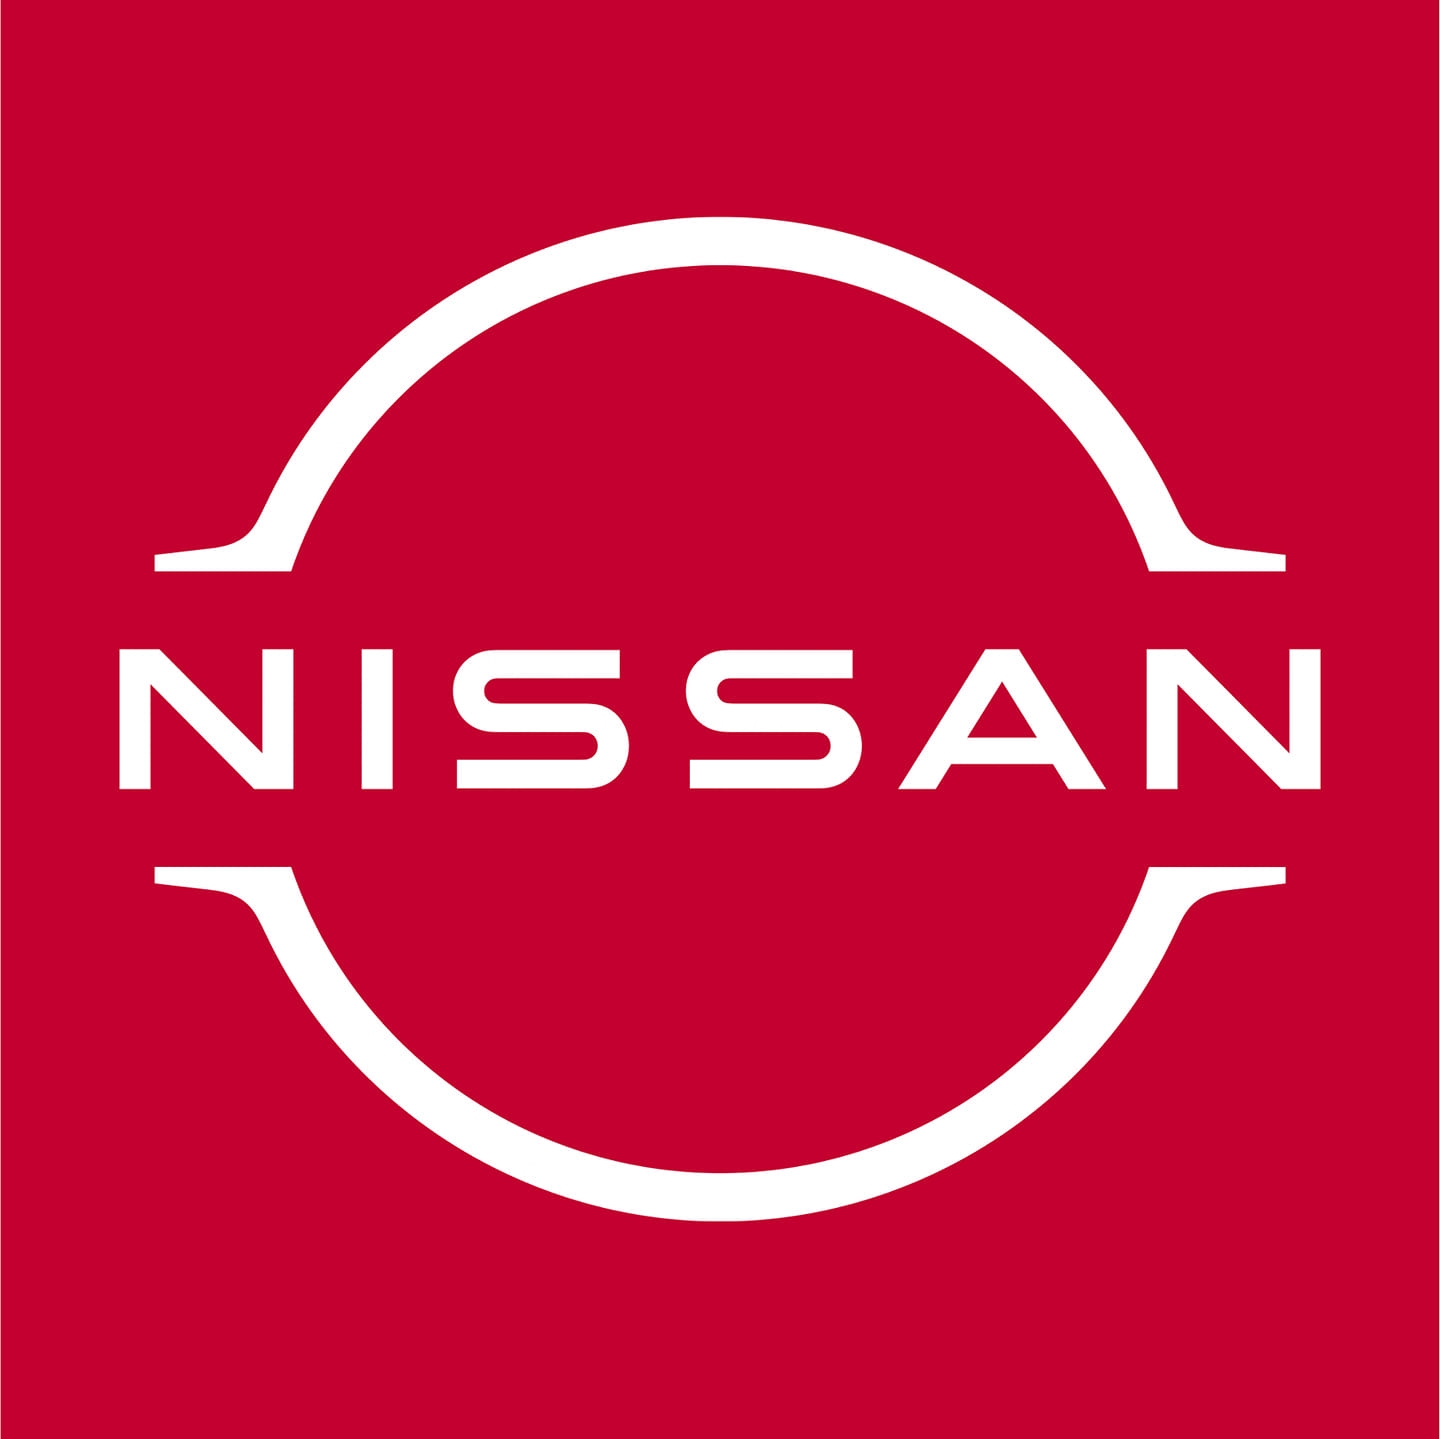 PRAMUKH NISSAN - SURAT|Car Wash|Automotive